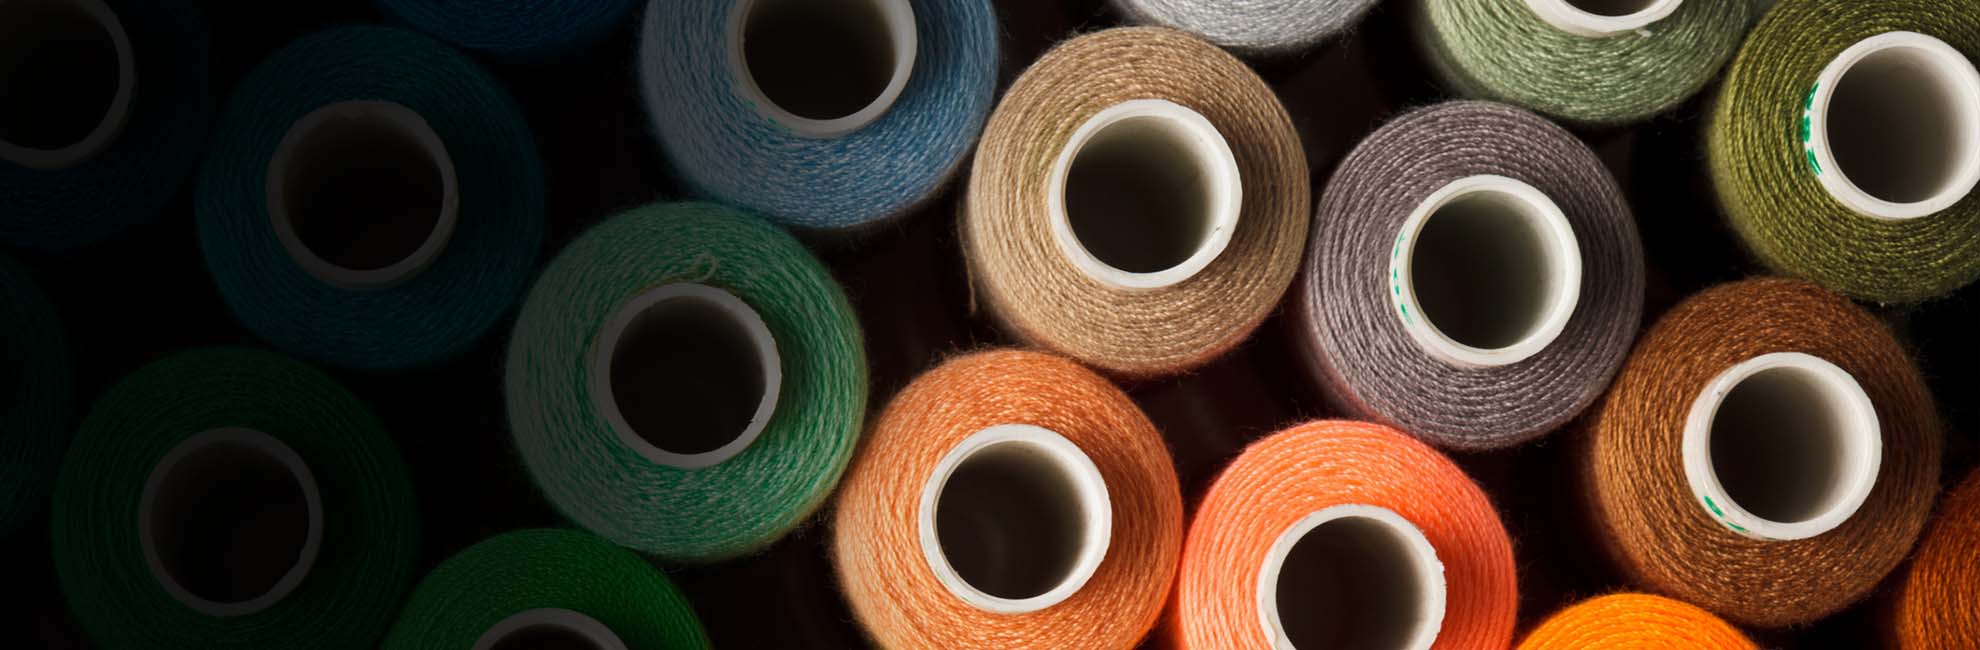 Textiles Color Measurement and Management